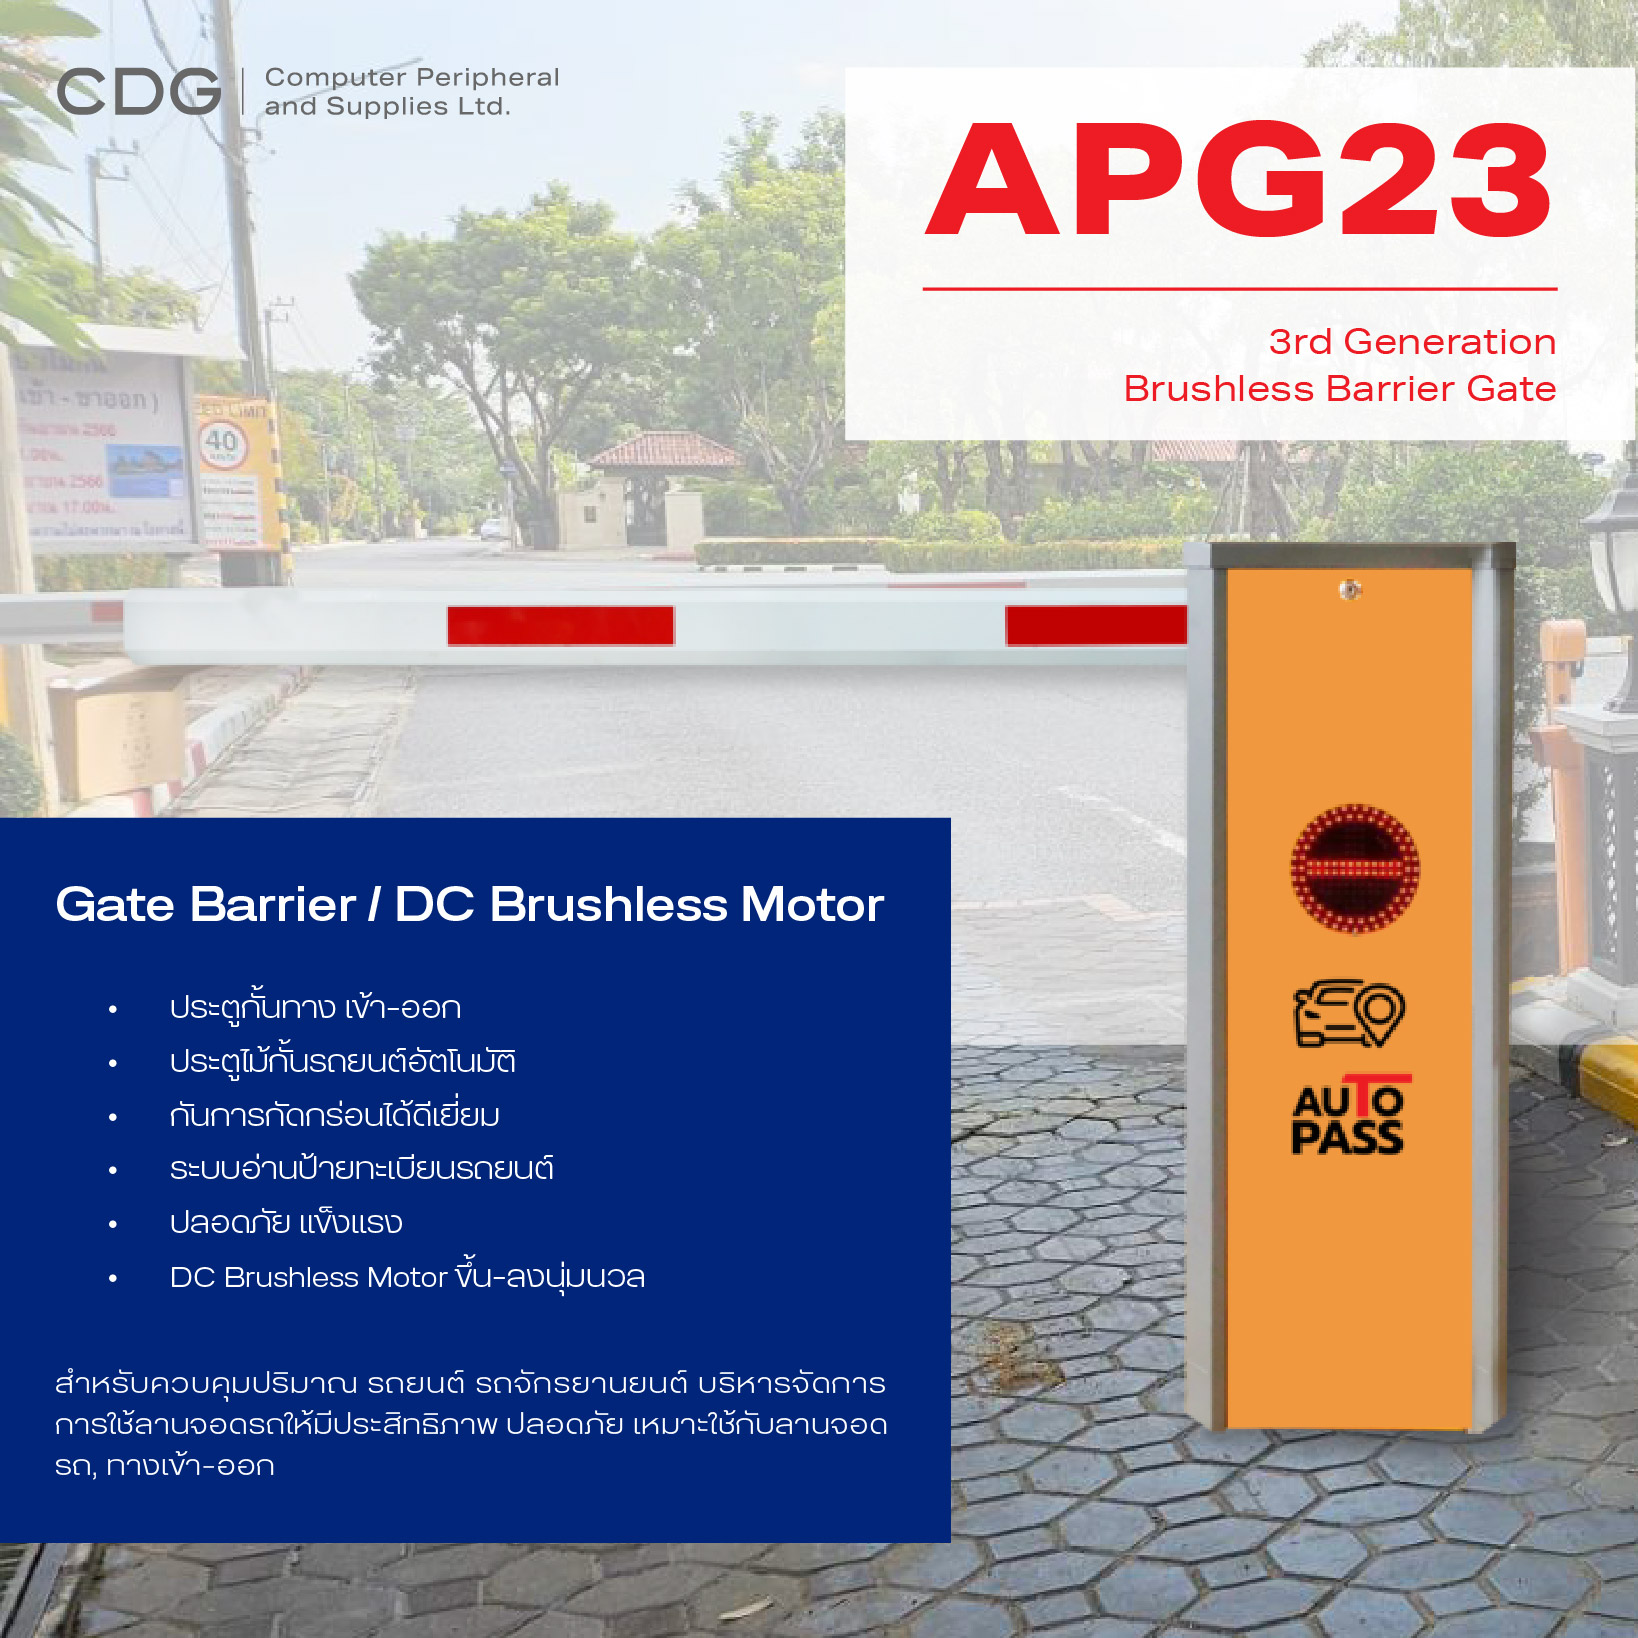 ระบบไม้กั้นรถยนต์ รุ่น APG23 และ APG16 / DC Brushless Motor